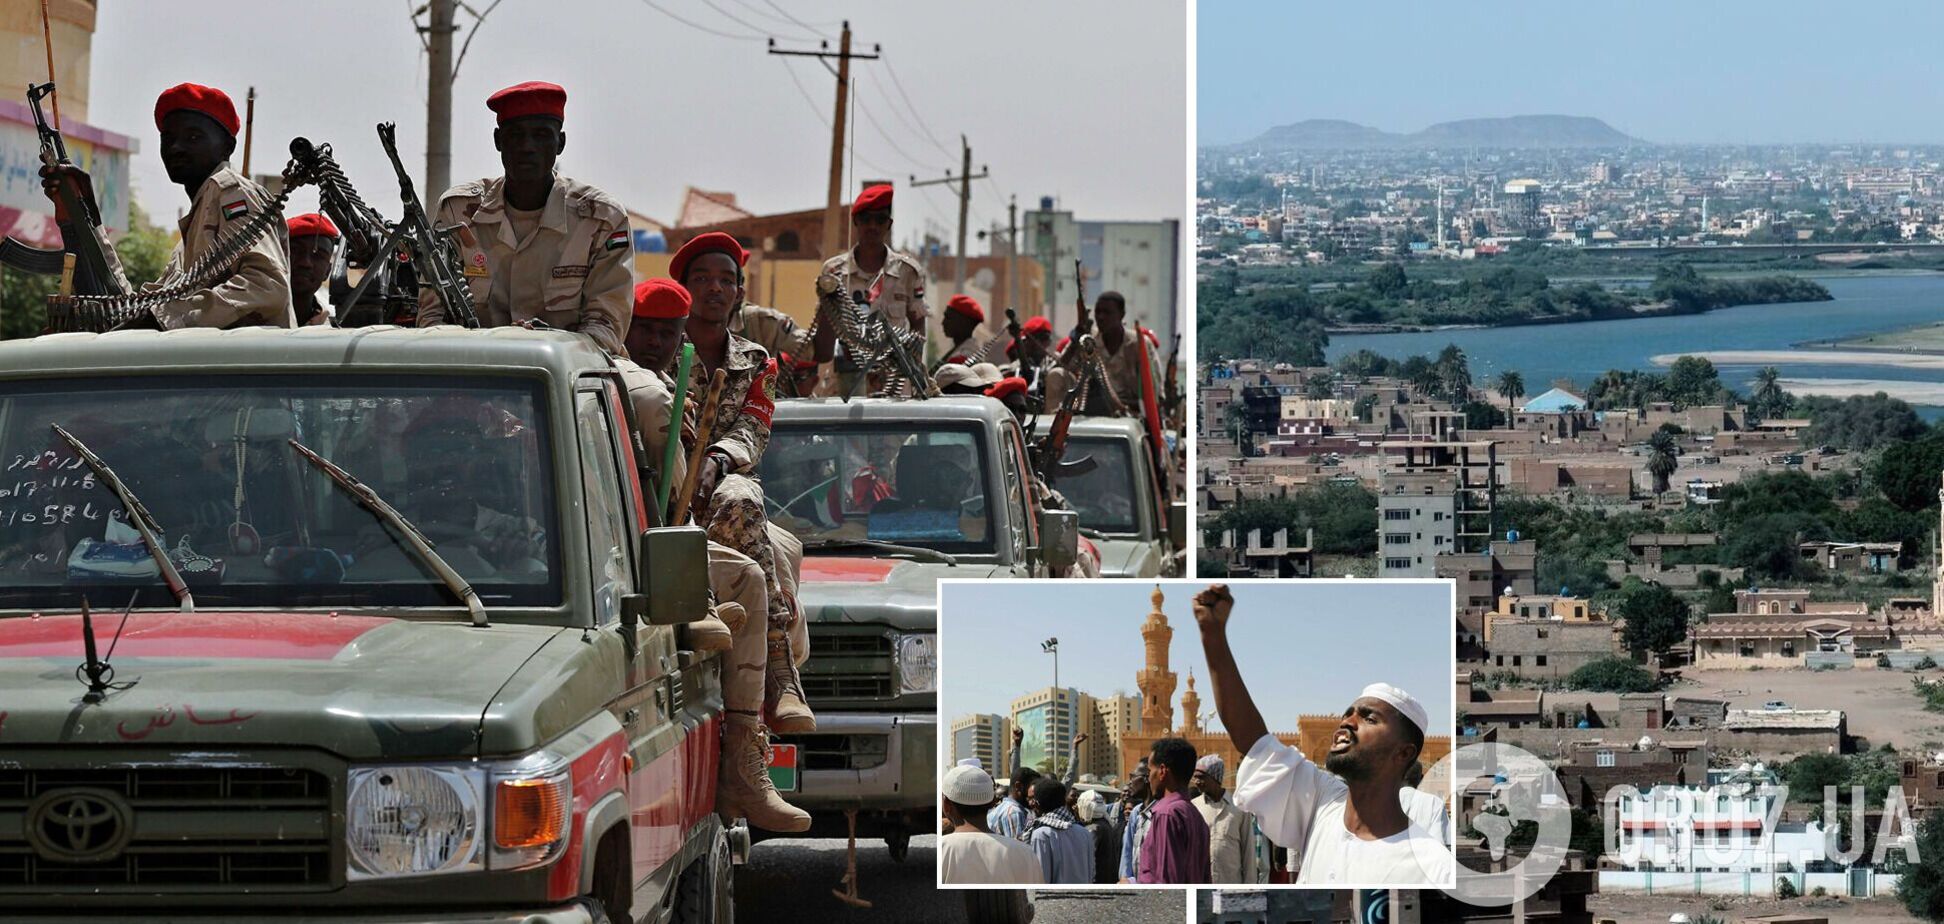 В Судане произошла попытка военного переворота, есть задержанные: в стране отключили связь и интернет